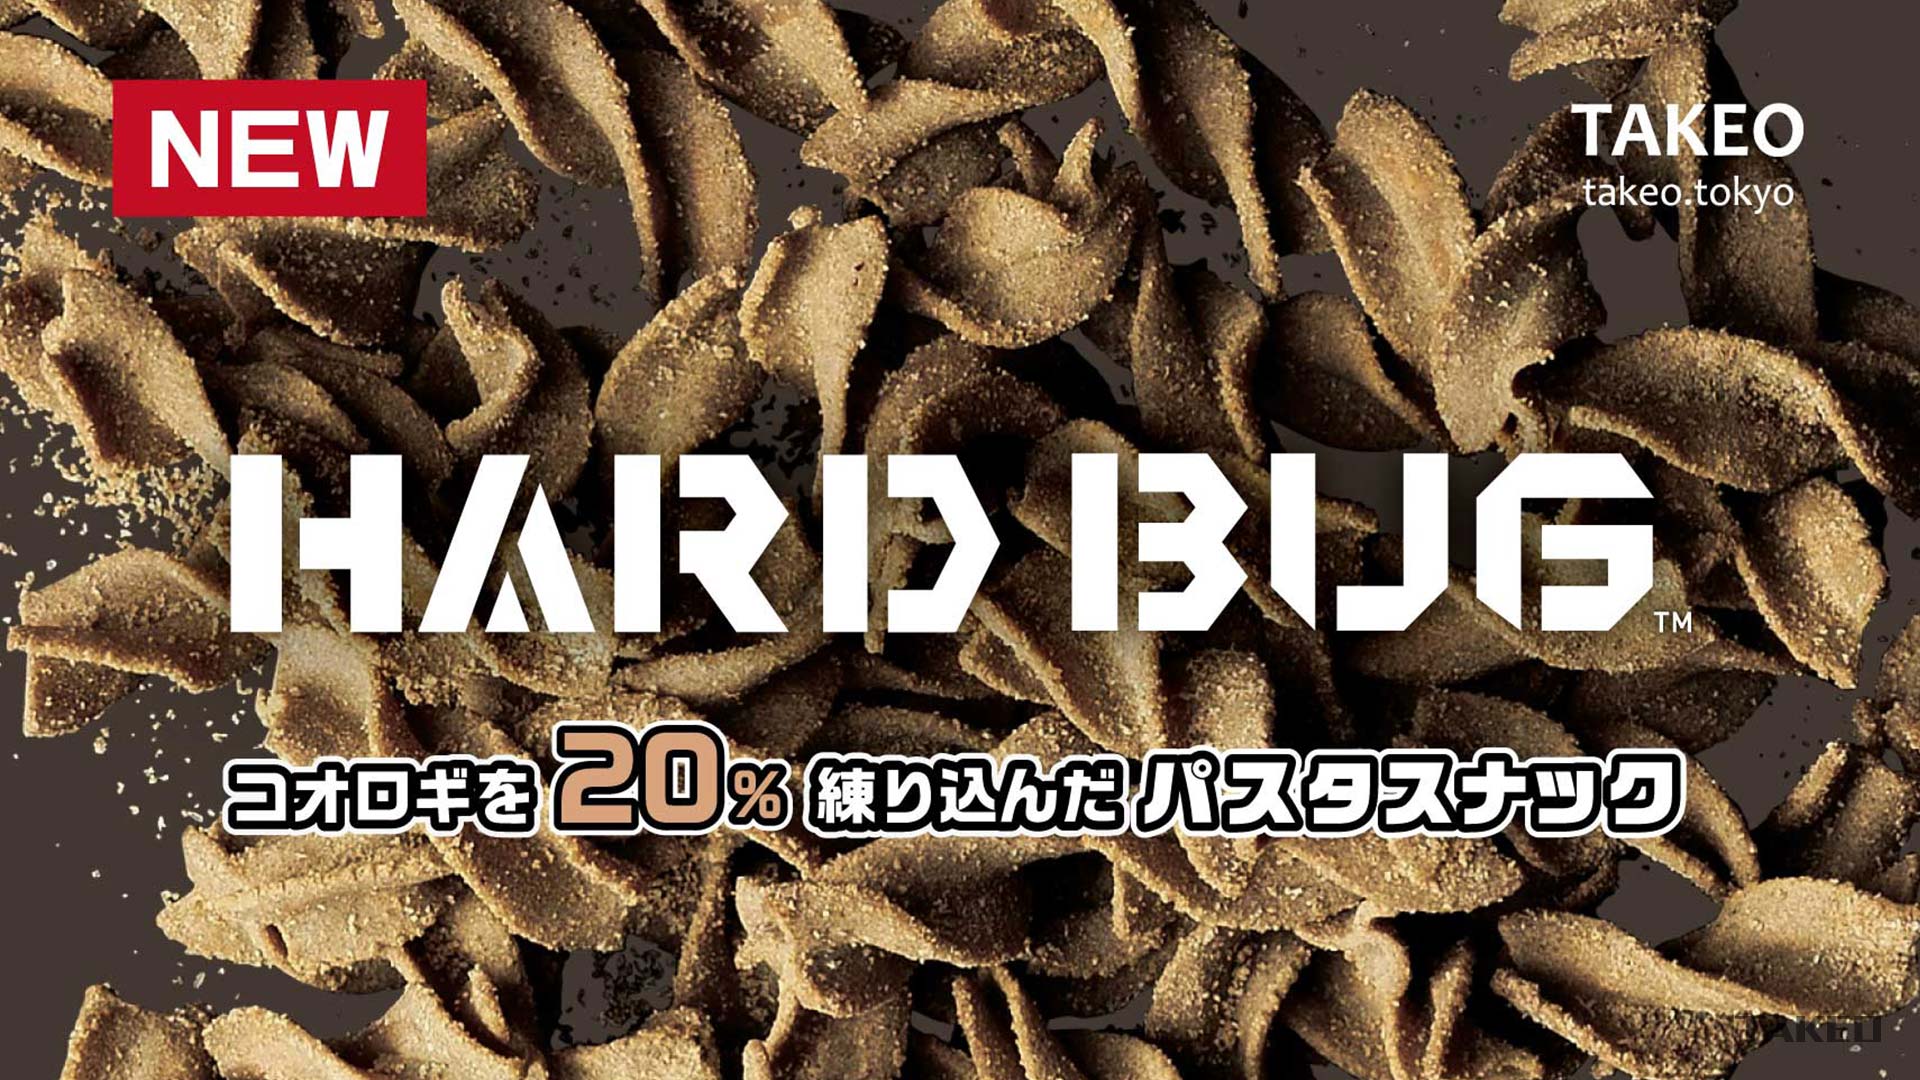 昆虫食 振り返り 2020 【オリジナル商品】パスタスナック「ハードバグ」発売